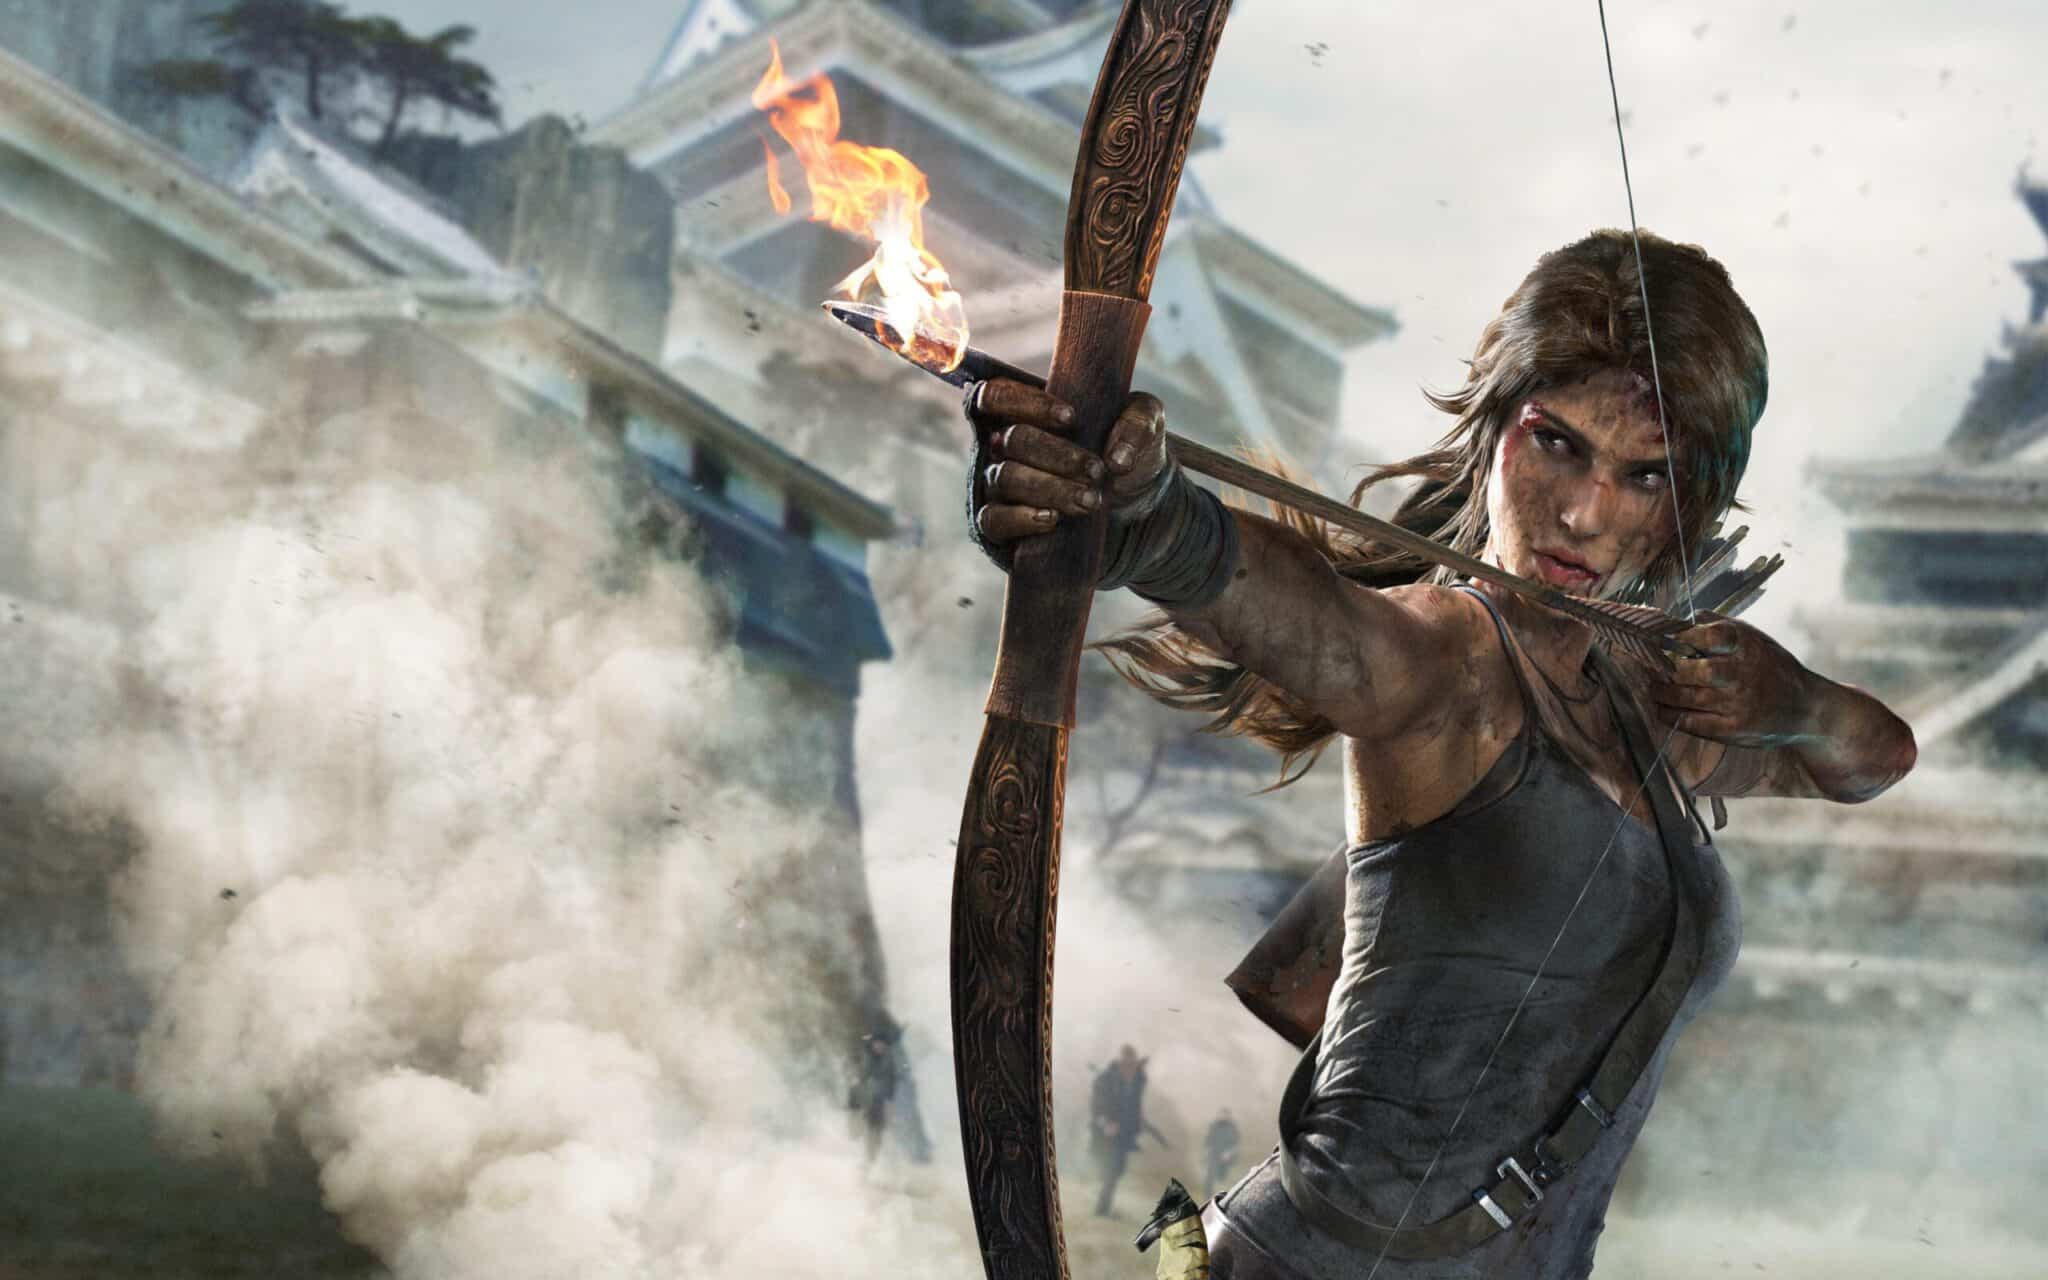 Prime Video está trabalhando em série de Tomb Raider - Olhar Digital